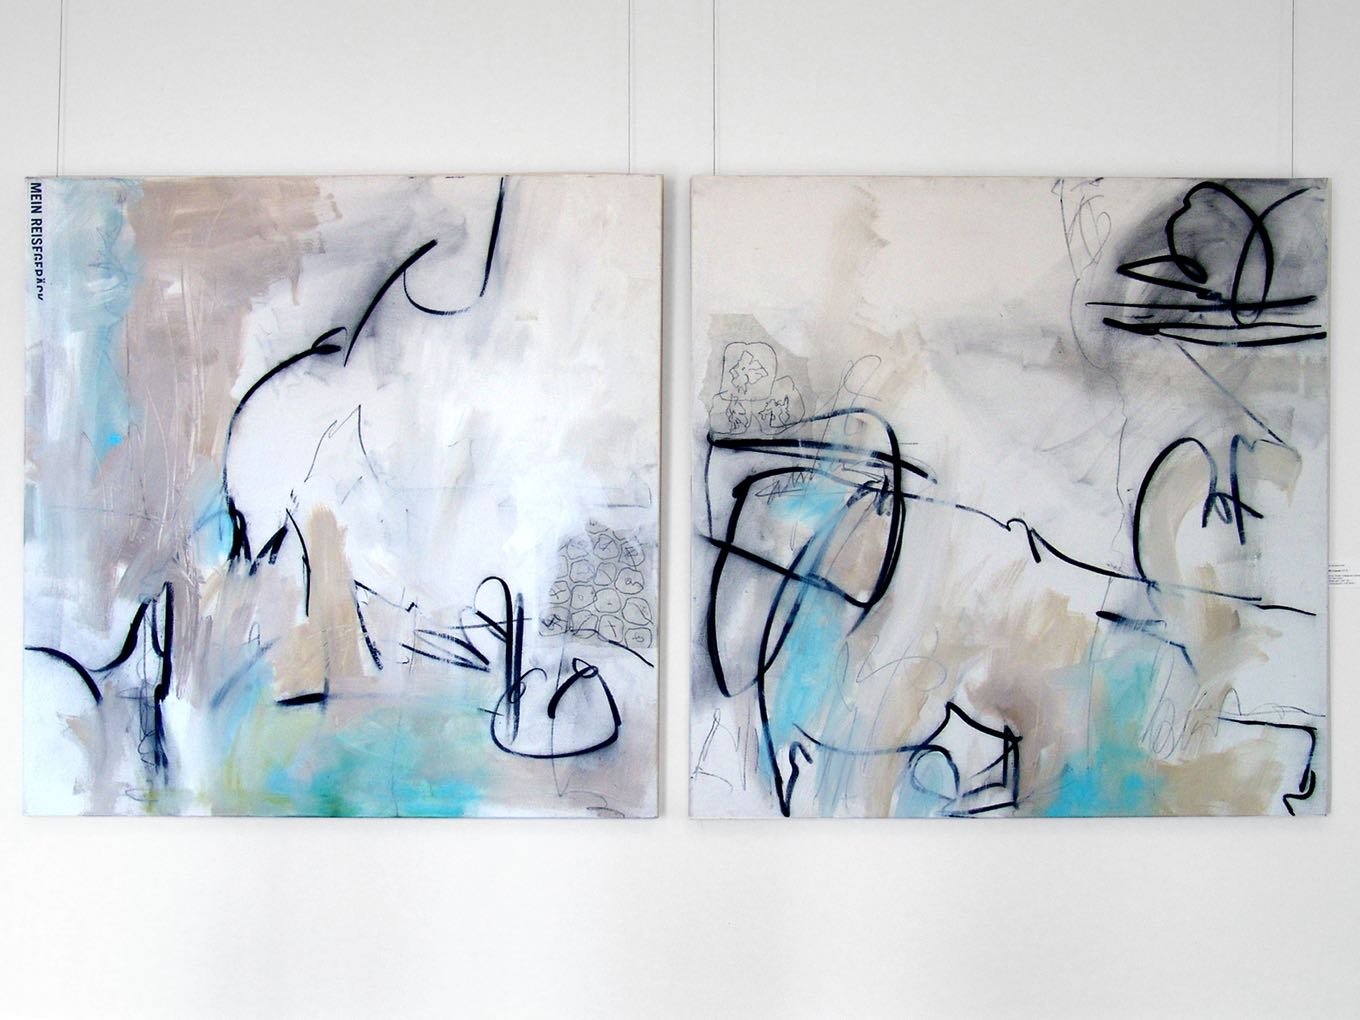 Annemarie Graf: My luggage, 2010, Acryl auf Leinwand, 2 x 120 x 120cm